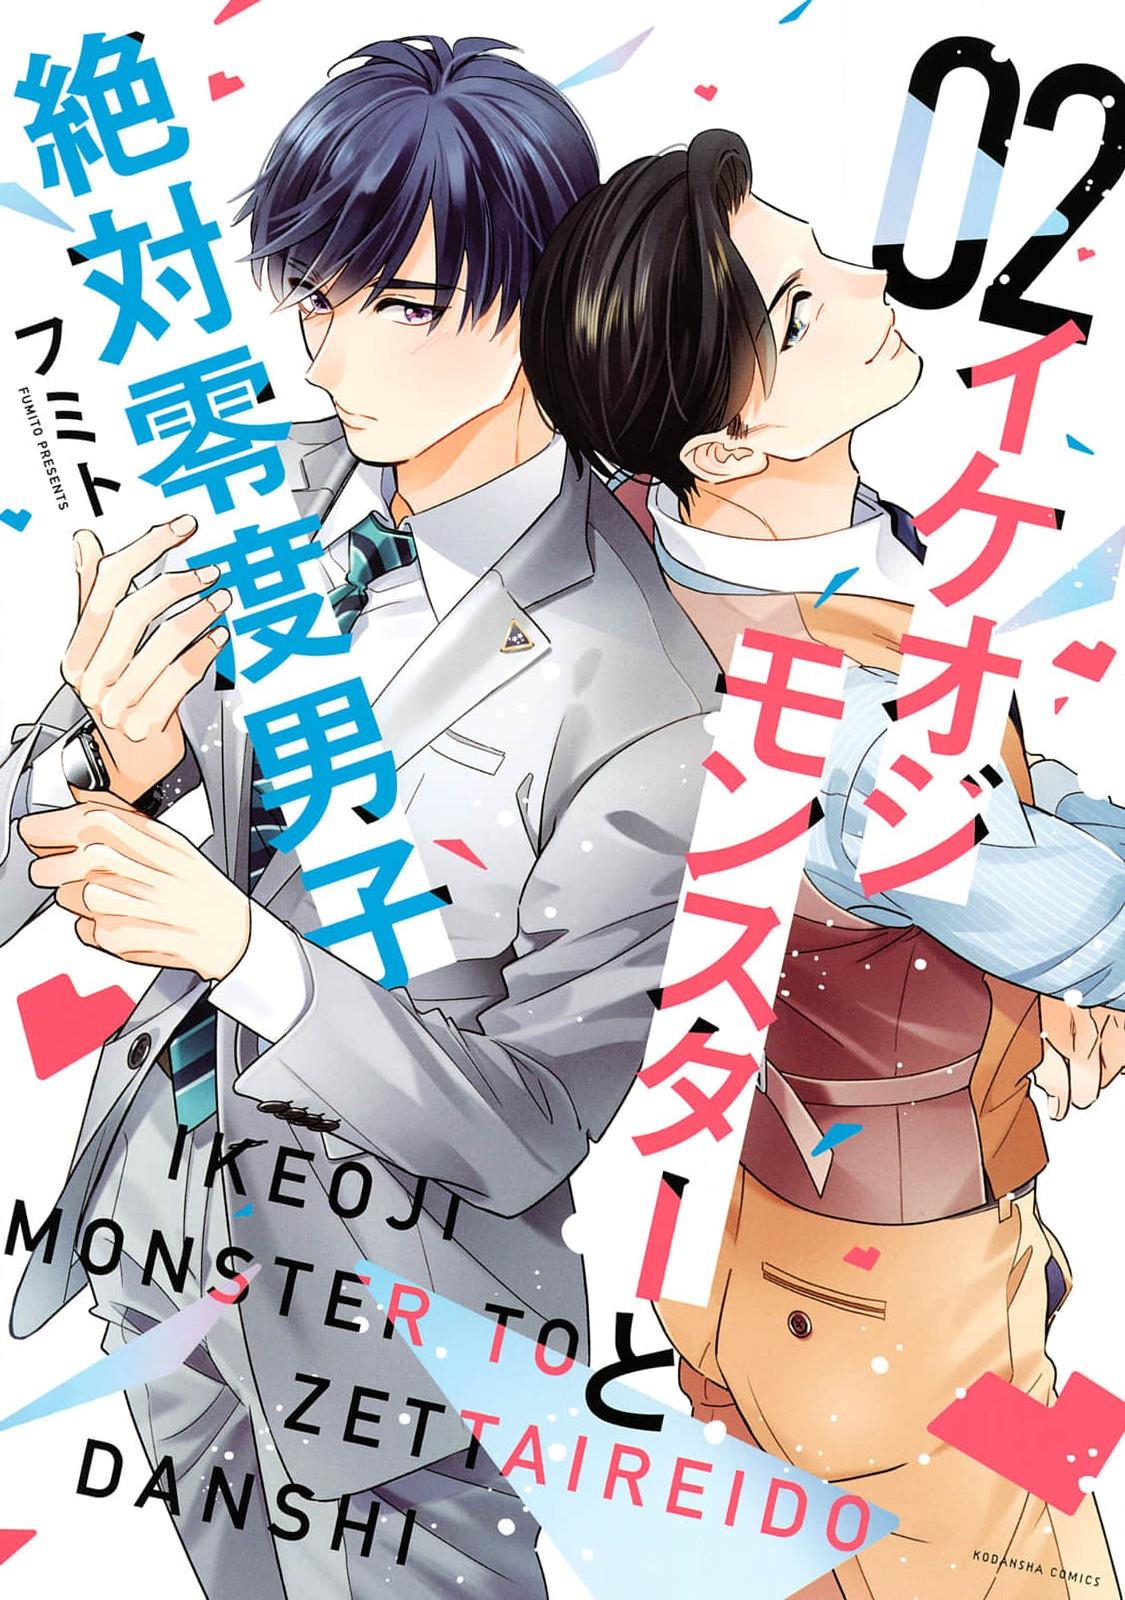 Ikeoji Monster To Zettai Reido Danshi Vol.2 Chapter 7 - Picture 1